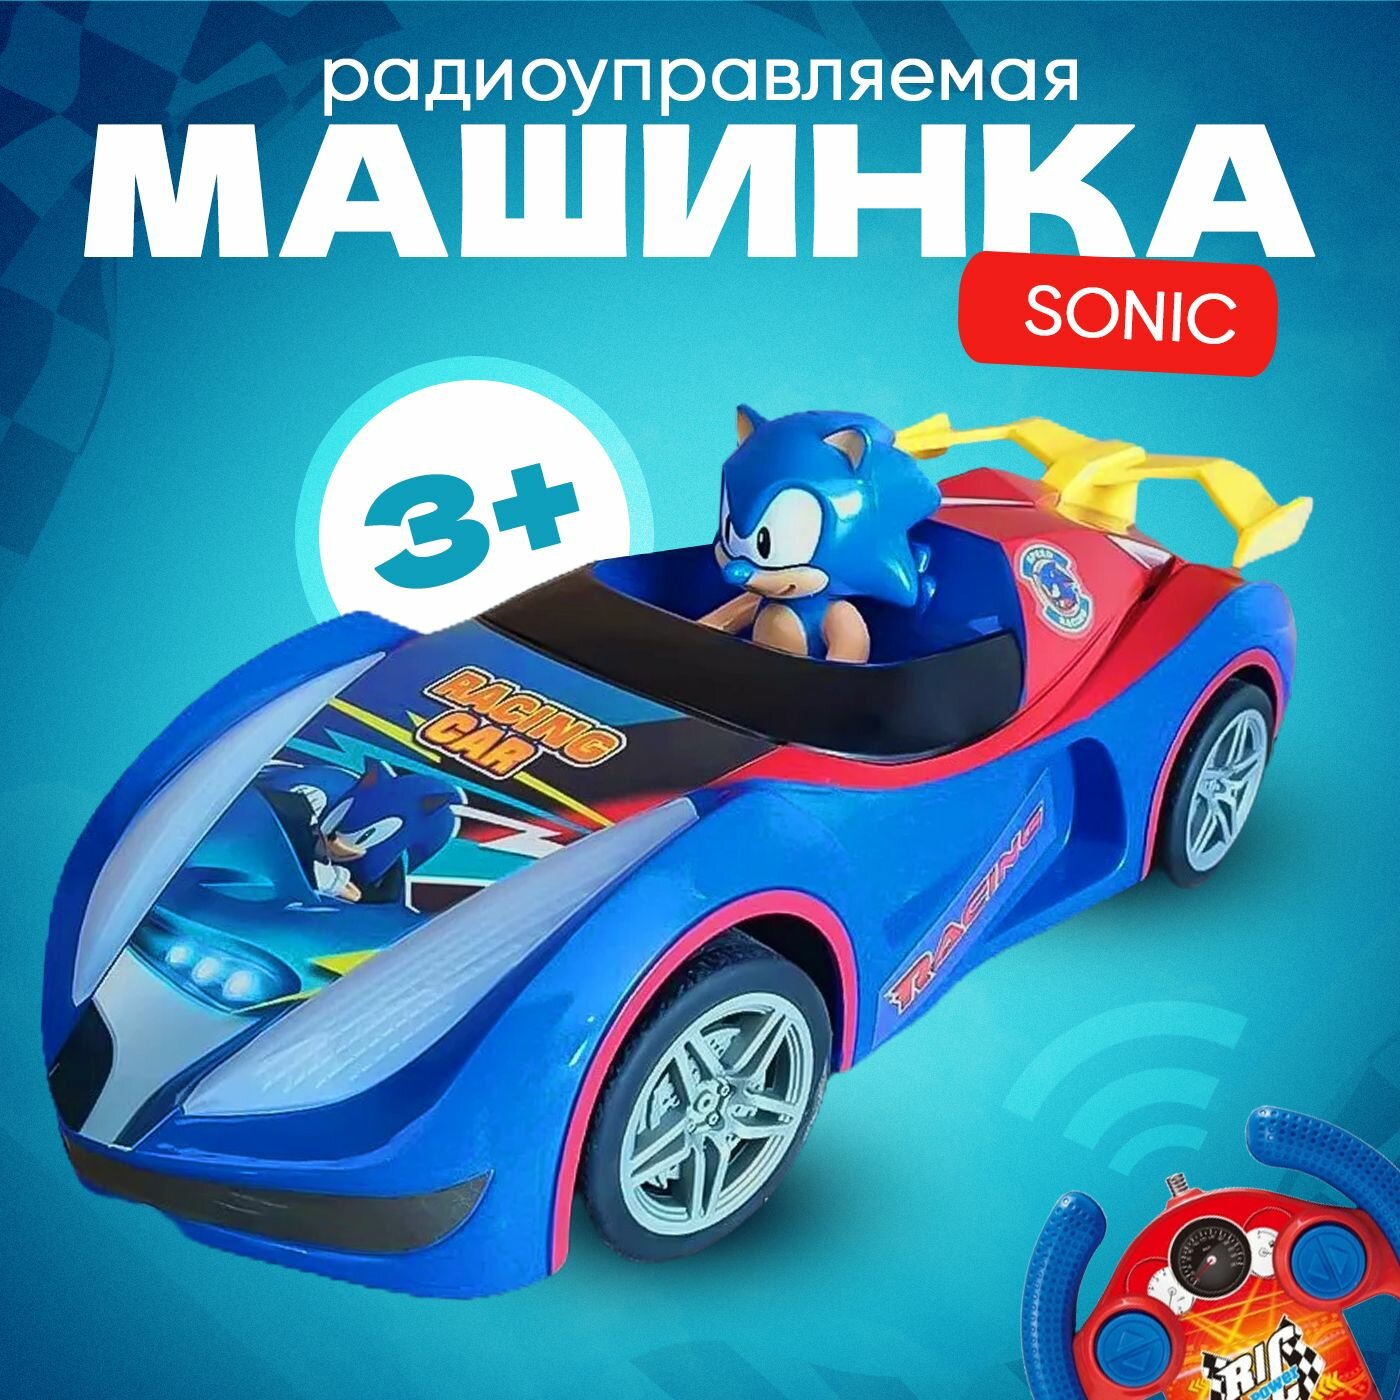 Машинка радиоуправляемая Соник, Sonic, Синий